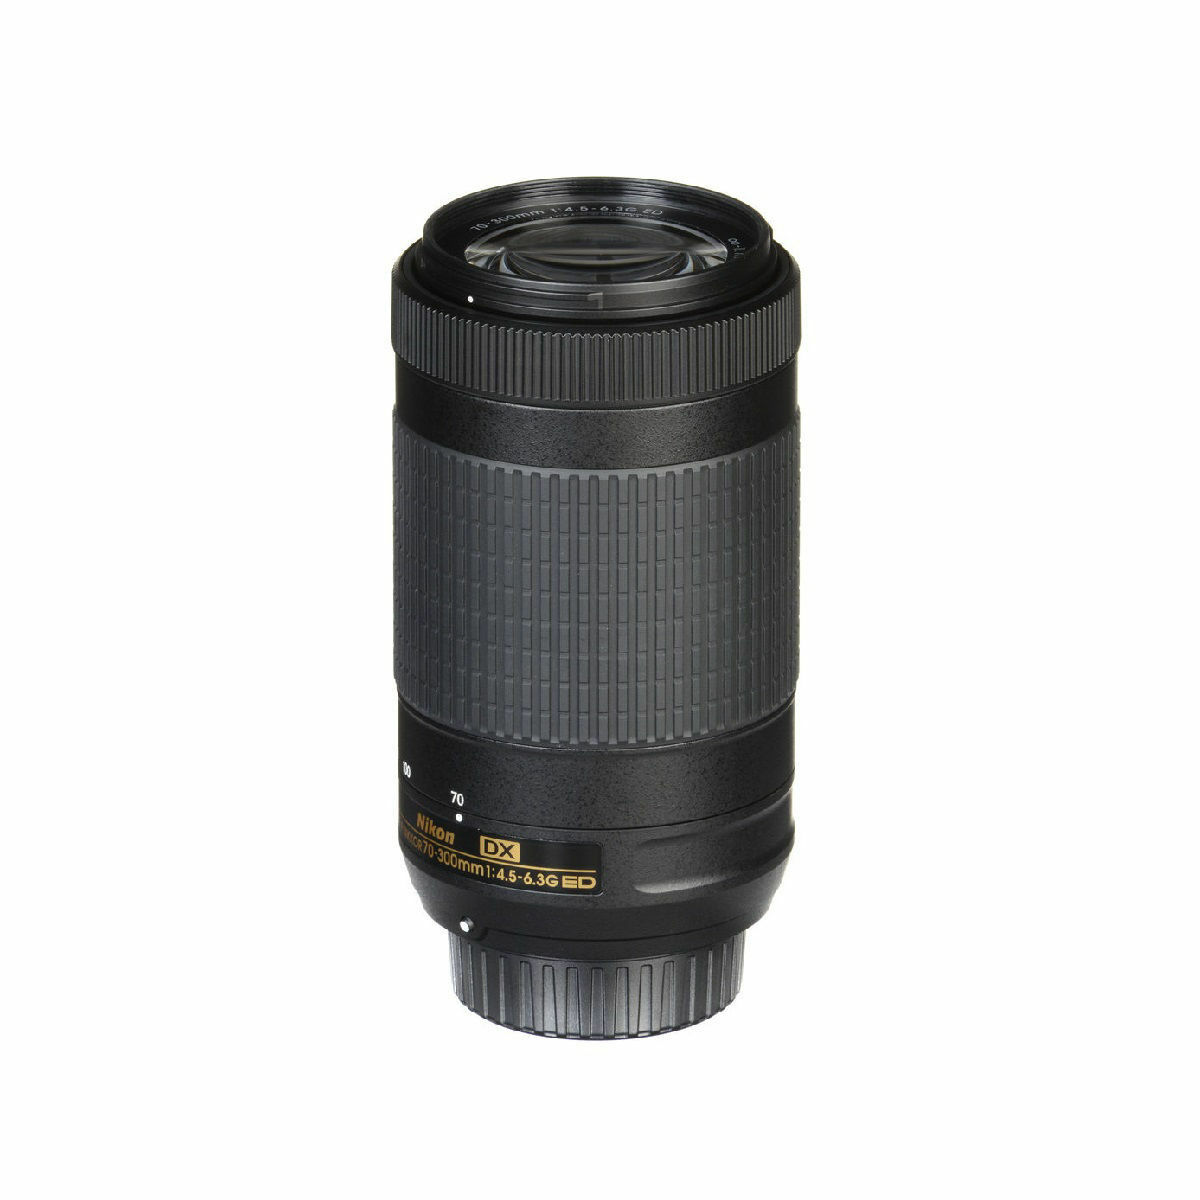 Nikon DX AF-P 70-300mm 4.5-6.3G ED VR